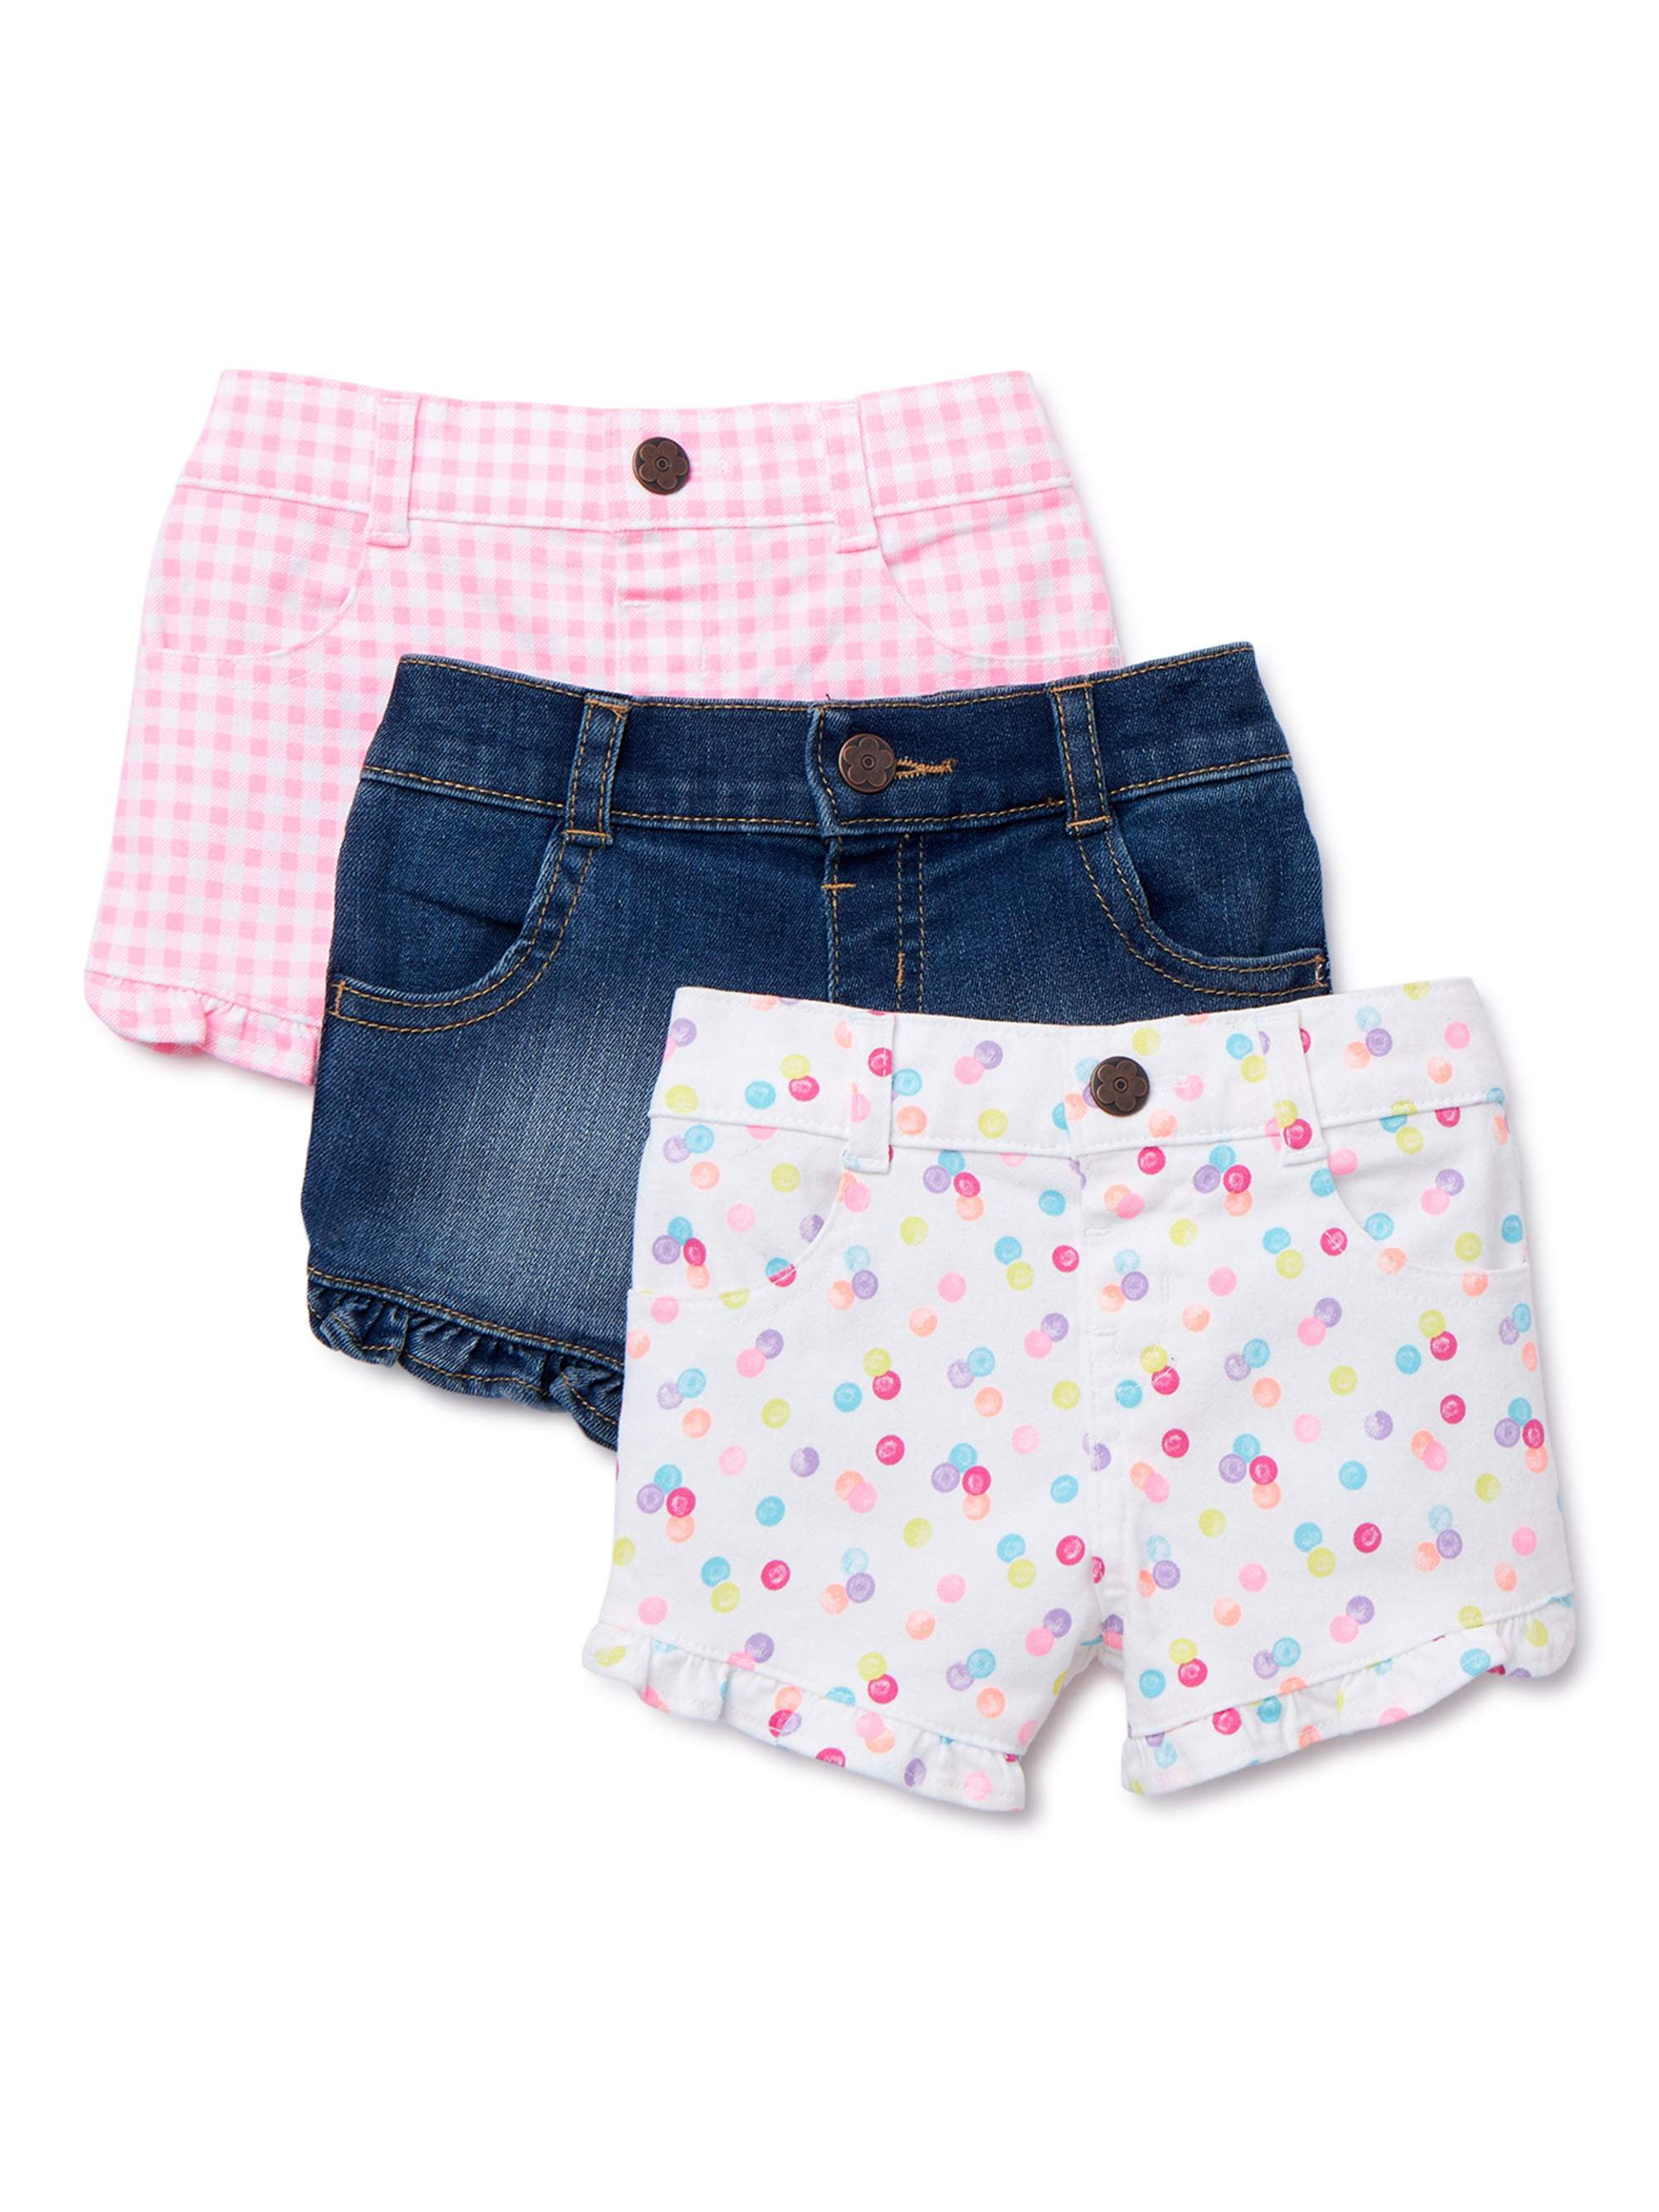 Garanimals Baby Girl Twill, Knit & Denim Ruffle Shorts, 3pk - Walmart.com